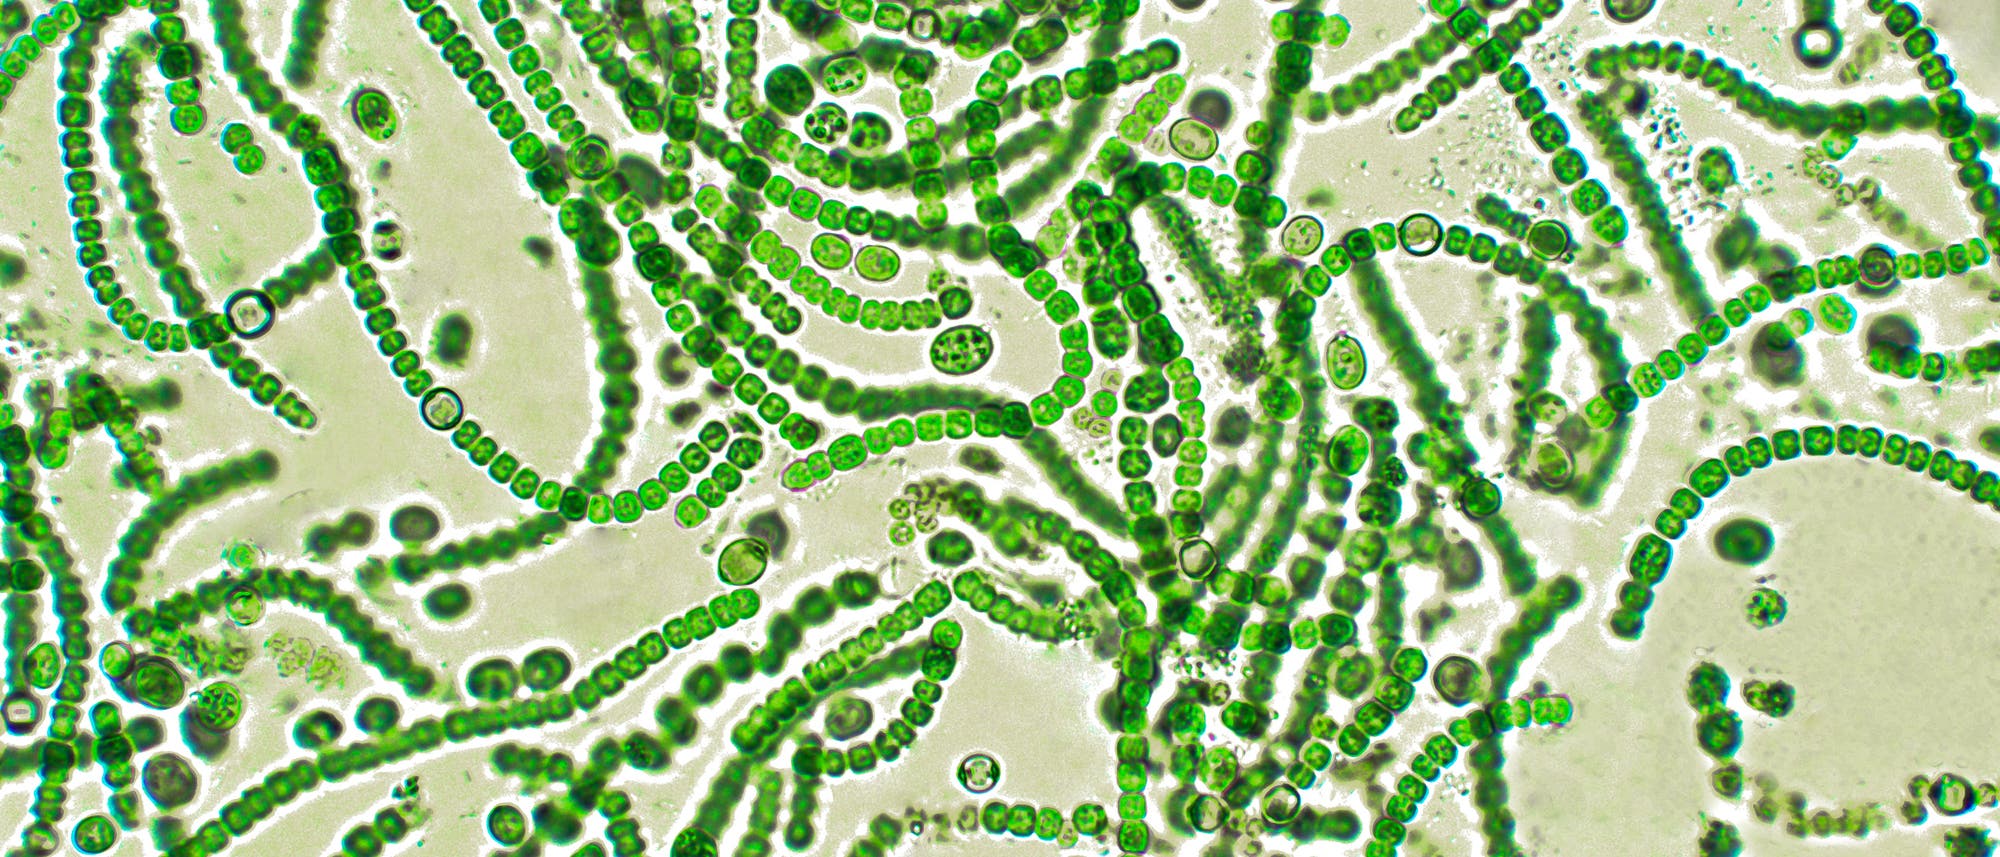 Zyanobakterien, umgangssprachlich auch Blaualgen genannt, kommen an Land und in Süß- wie Salzwasser vor